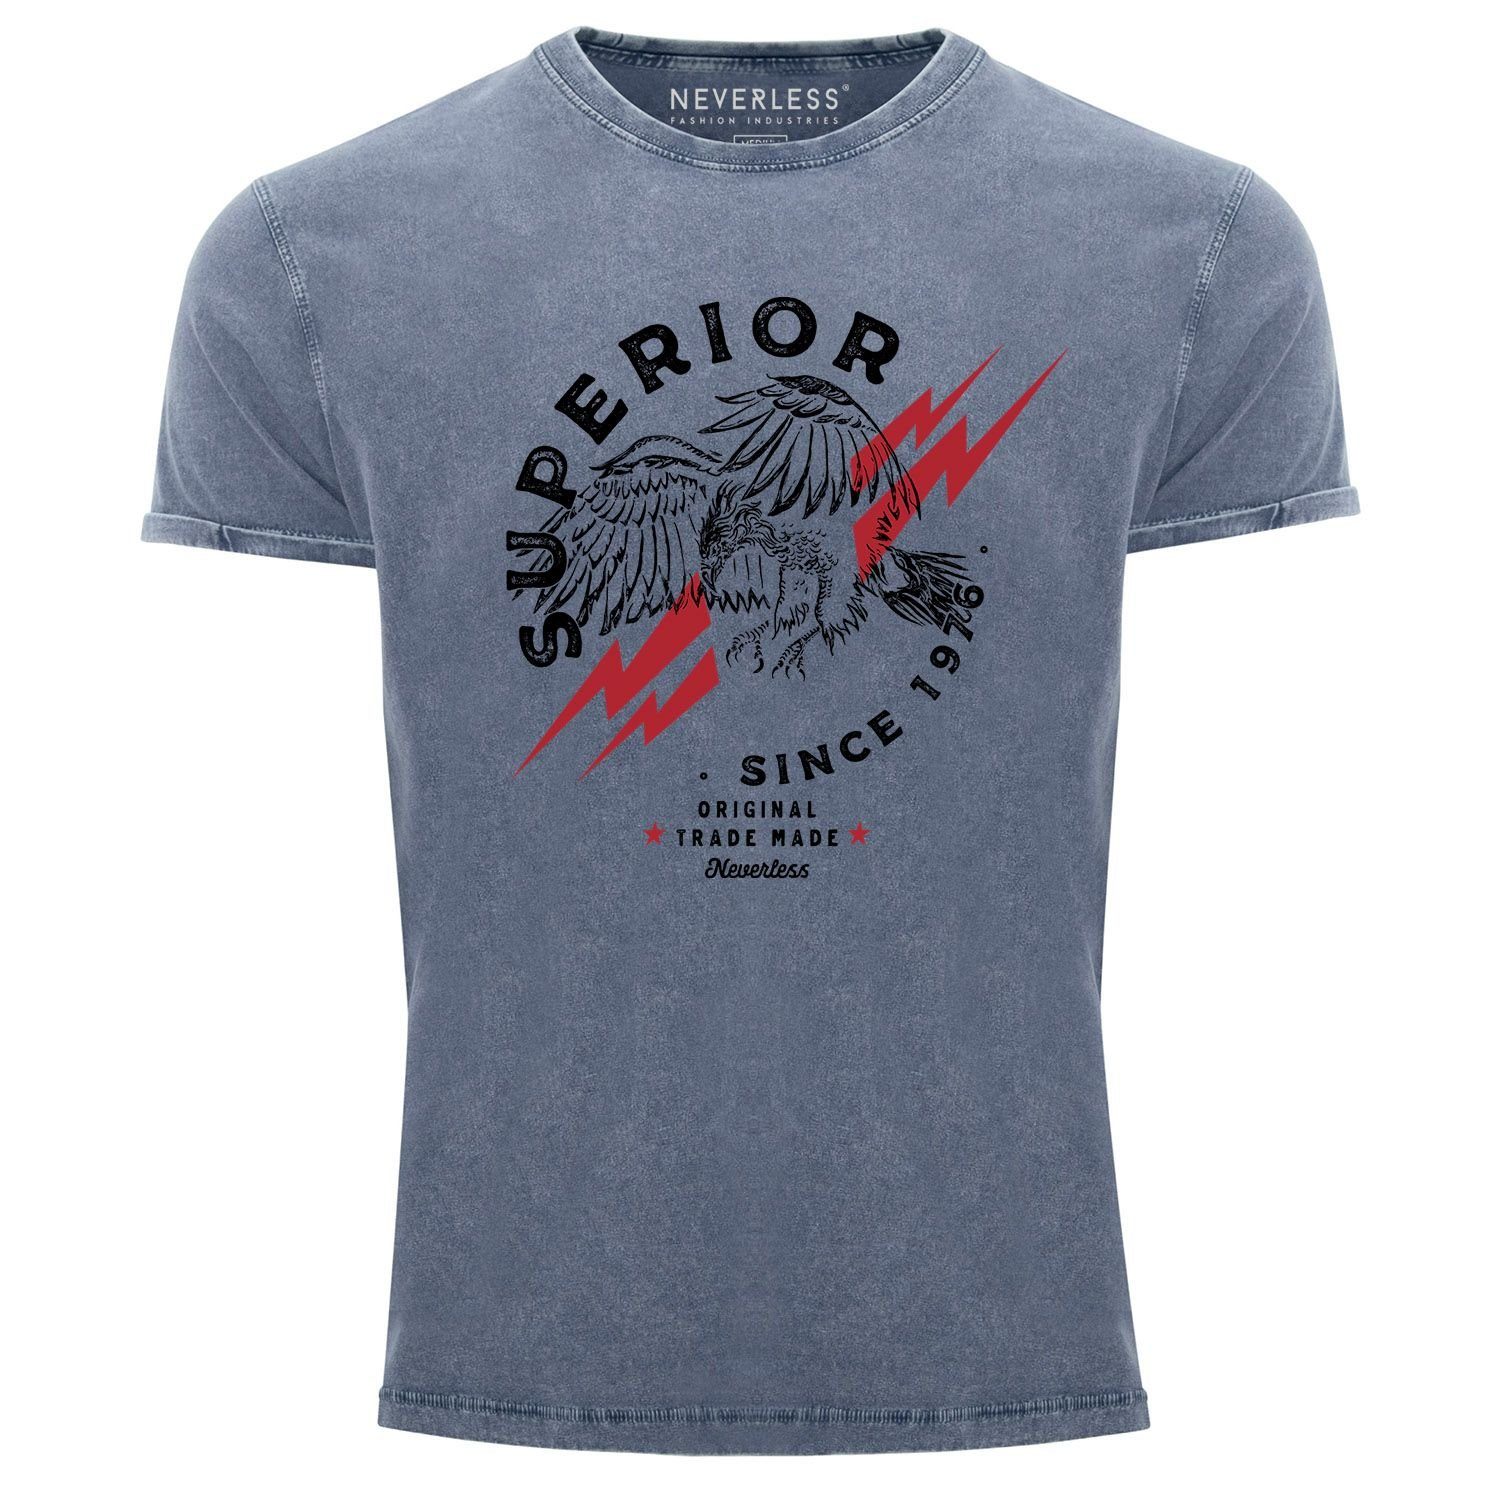 Aufdruck Eagle Neverless Slim mit Shirt Adler Neverless® blau 1976 Herren Print Look Superior Fit Printshirt T-Shirt Print Used Since Print-Shirt Vintage